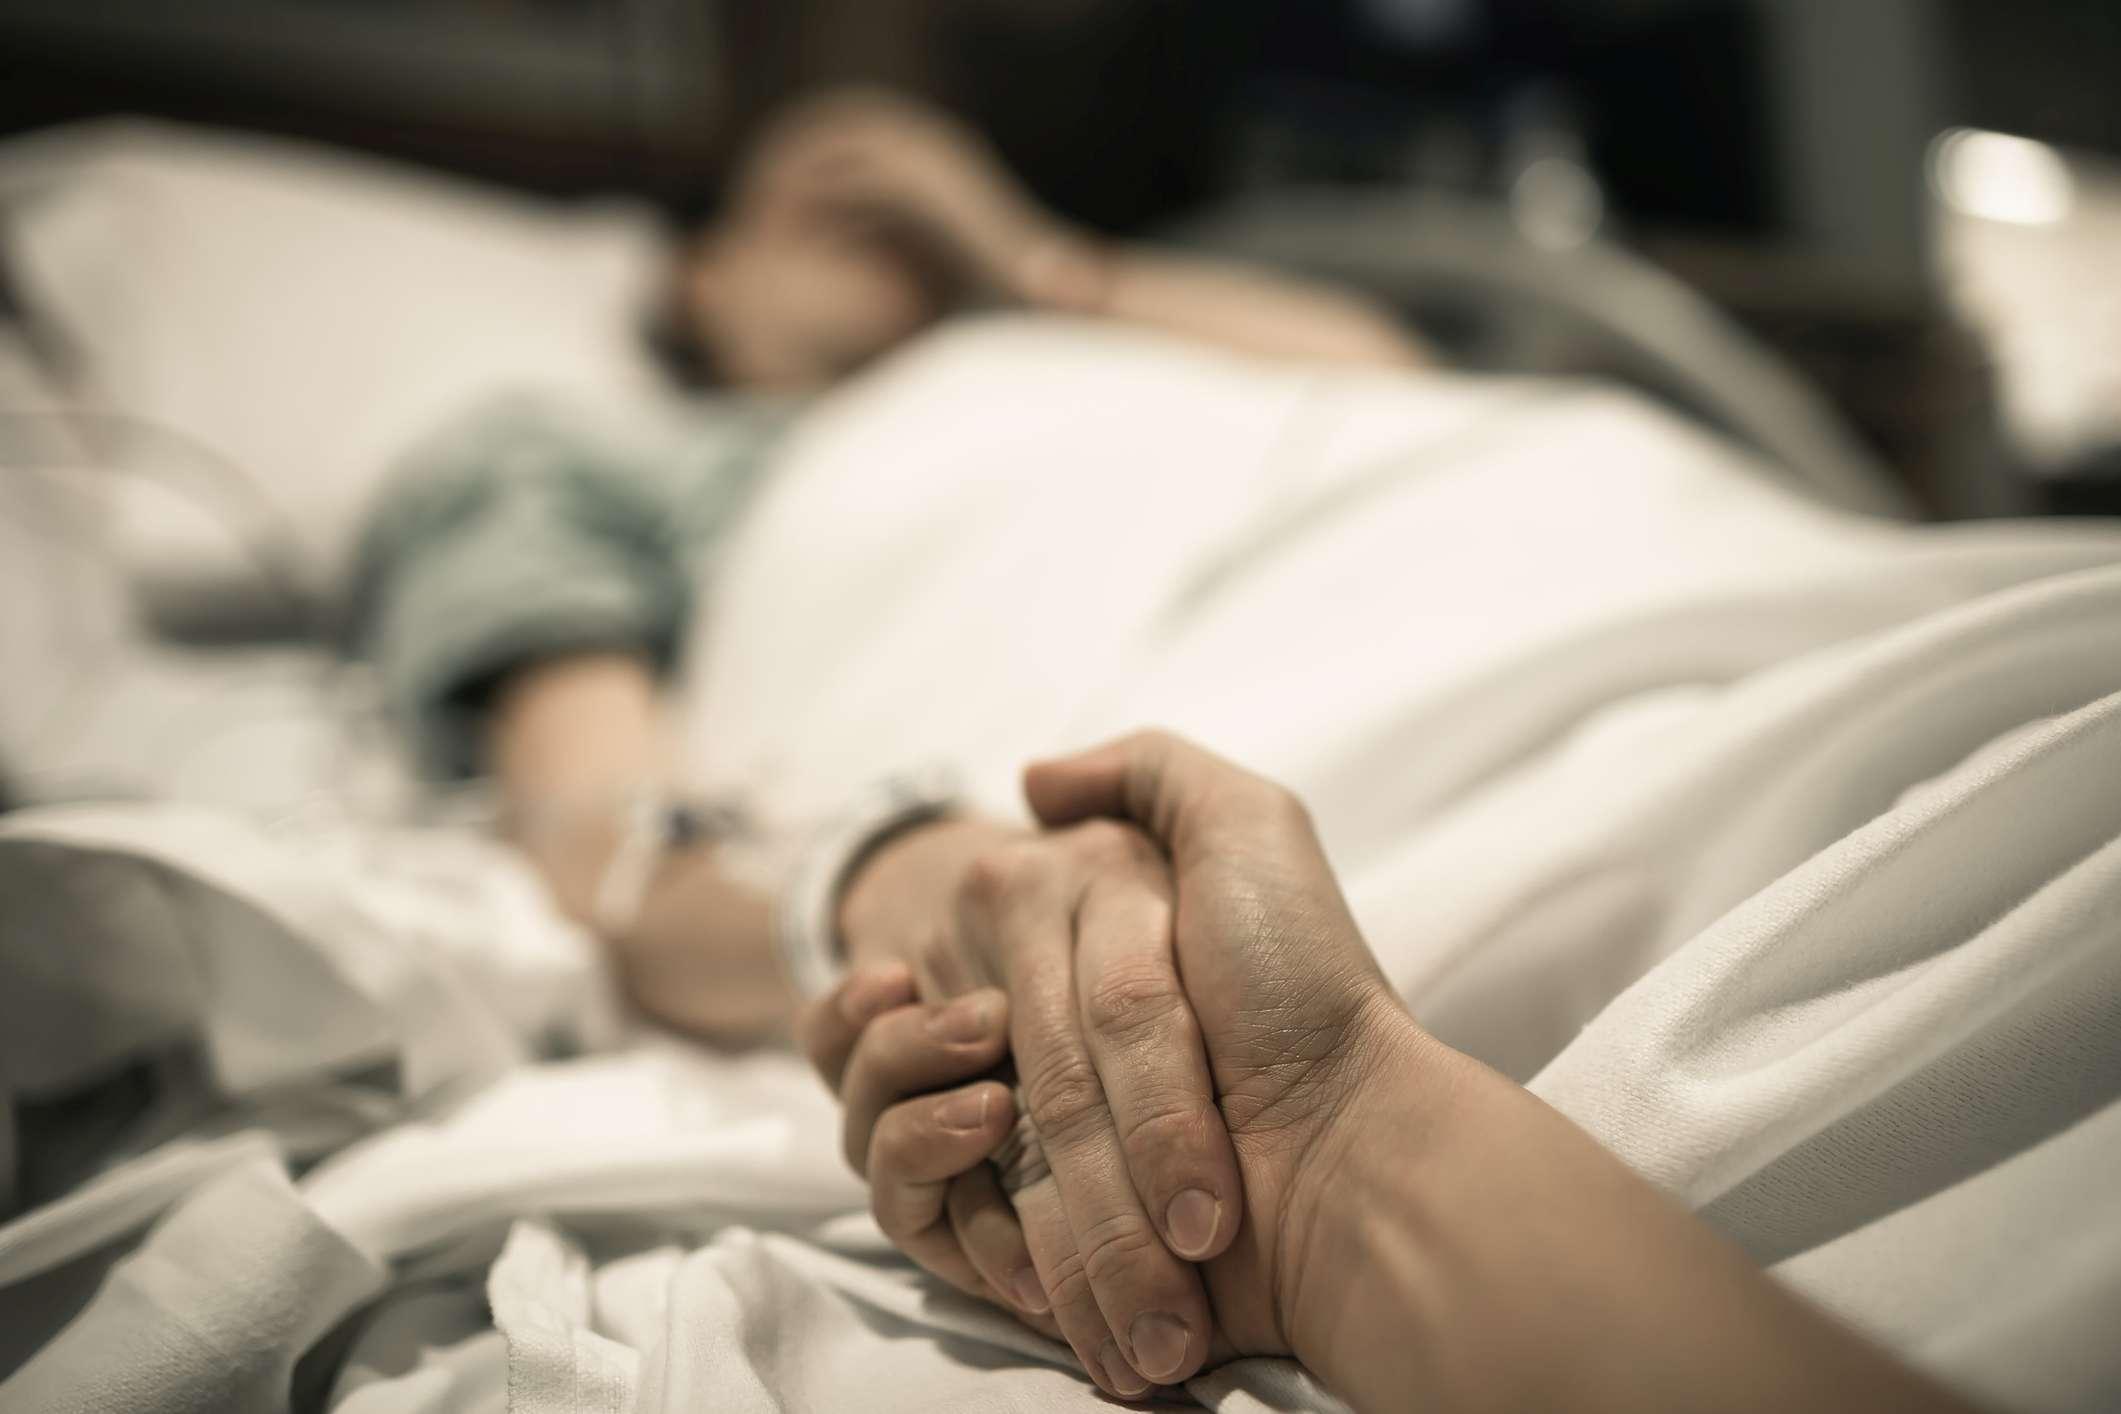 Kranke Frau, die im Krankenhausbett mit der Hand liegt, die von der Liebe eins gehalten wird. Familienlinien und medizinisches Tragödienkonzept.